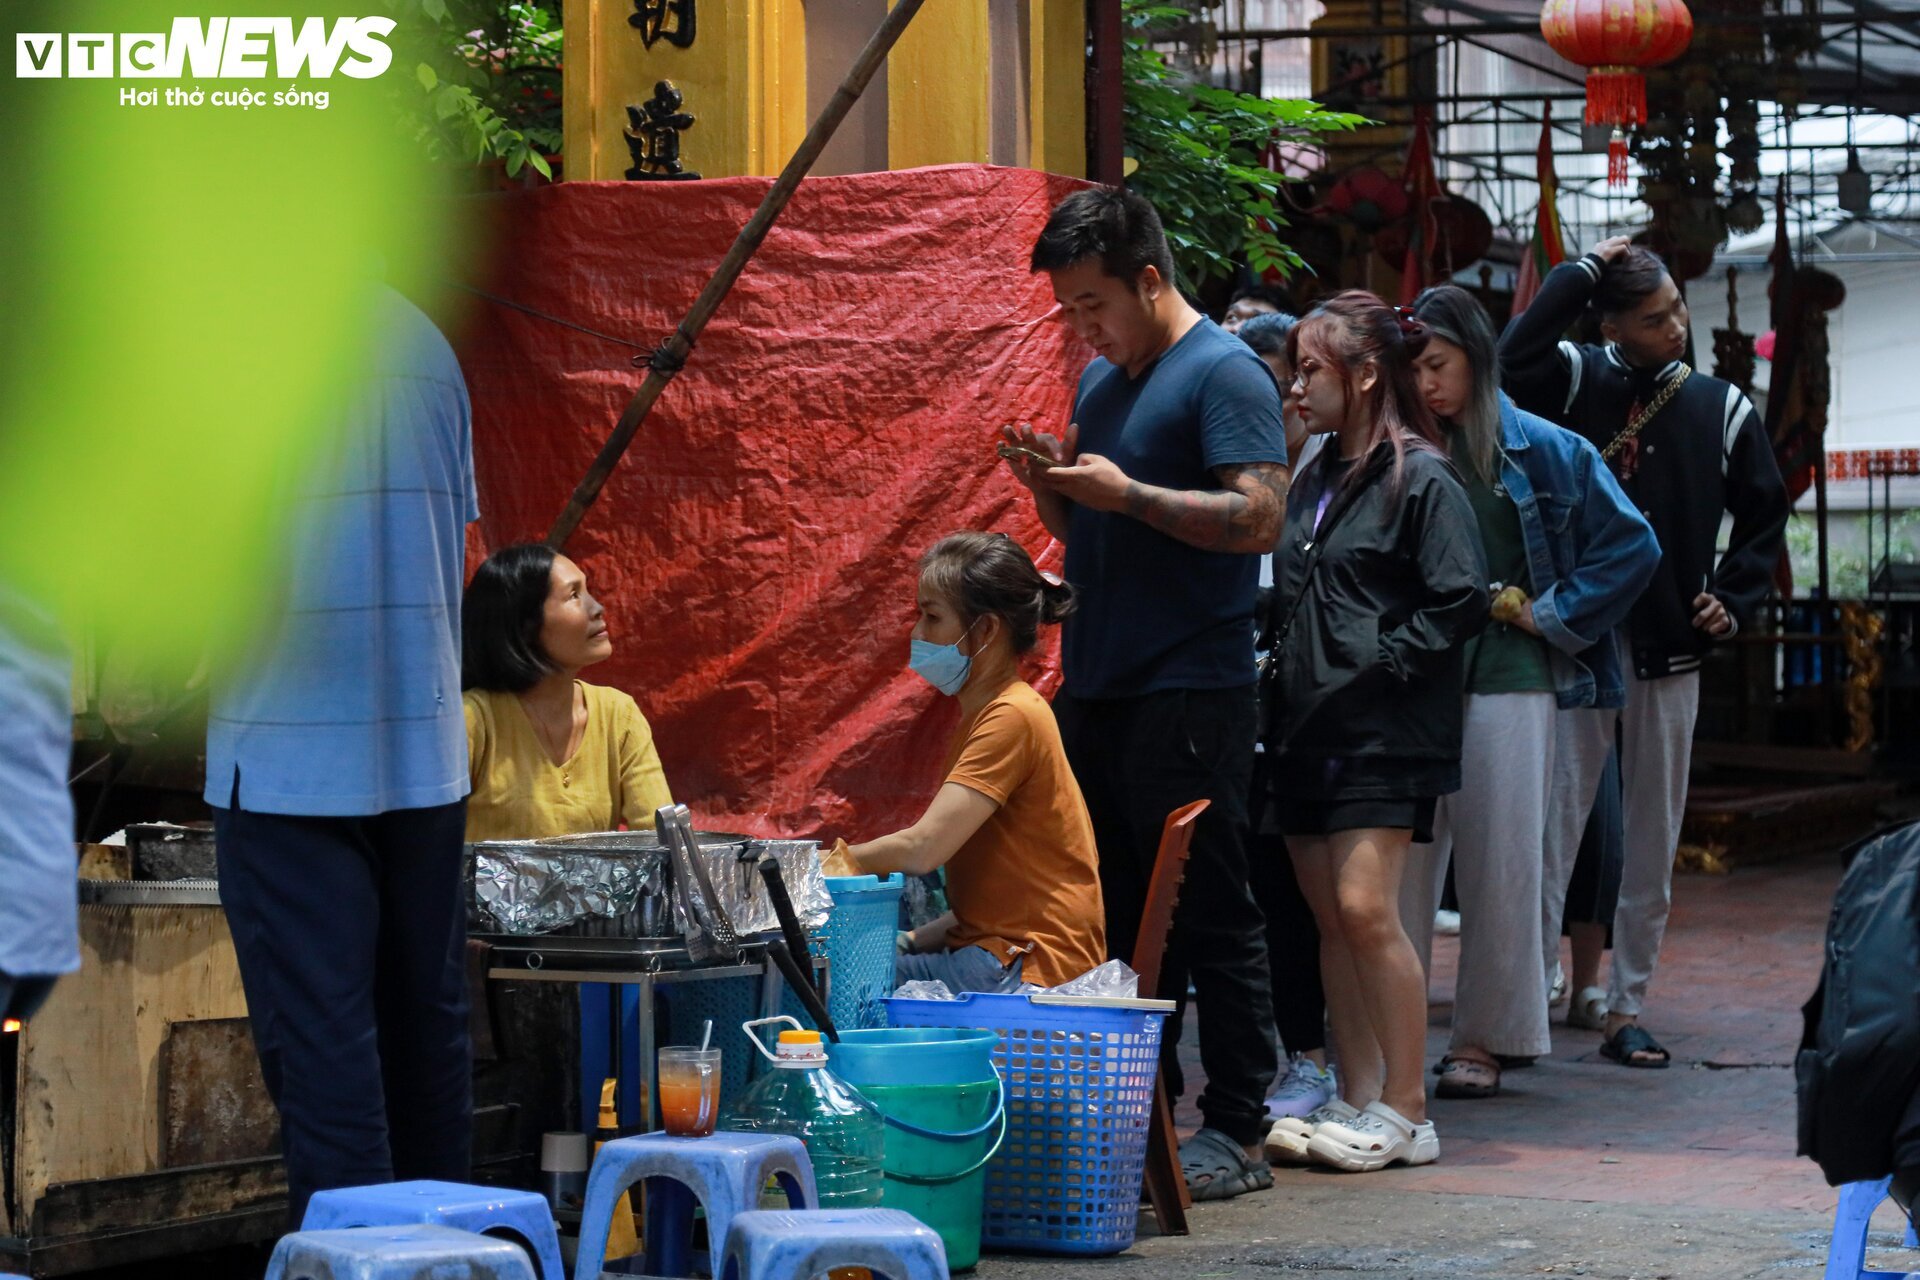 Hà Nội chuyển rét, quán ăn vỉa hè đông nghẹt khách từ sáng sớm đến đêm khuya - Ảnh 9.